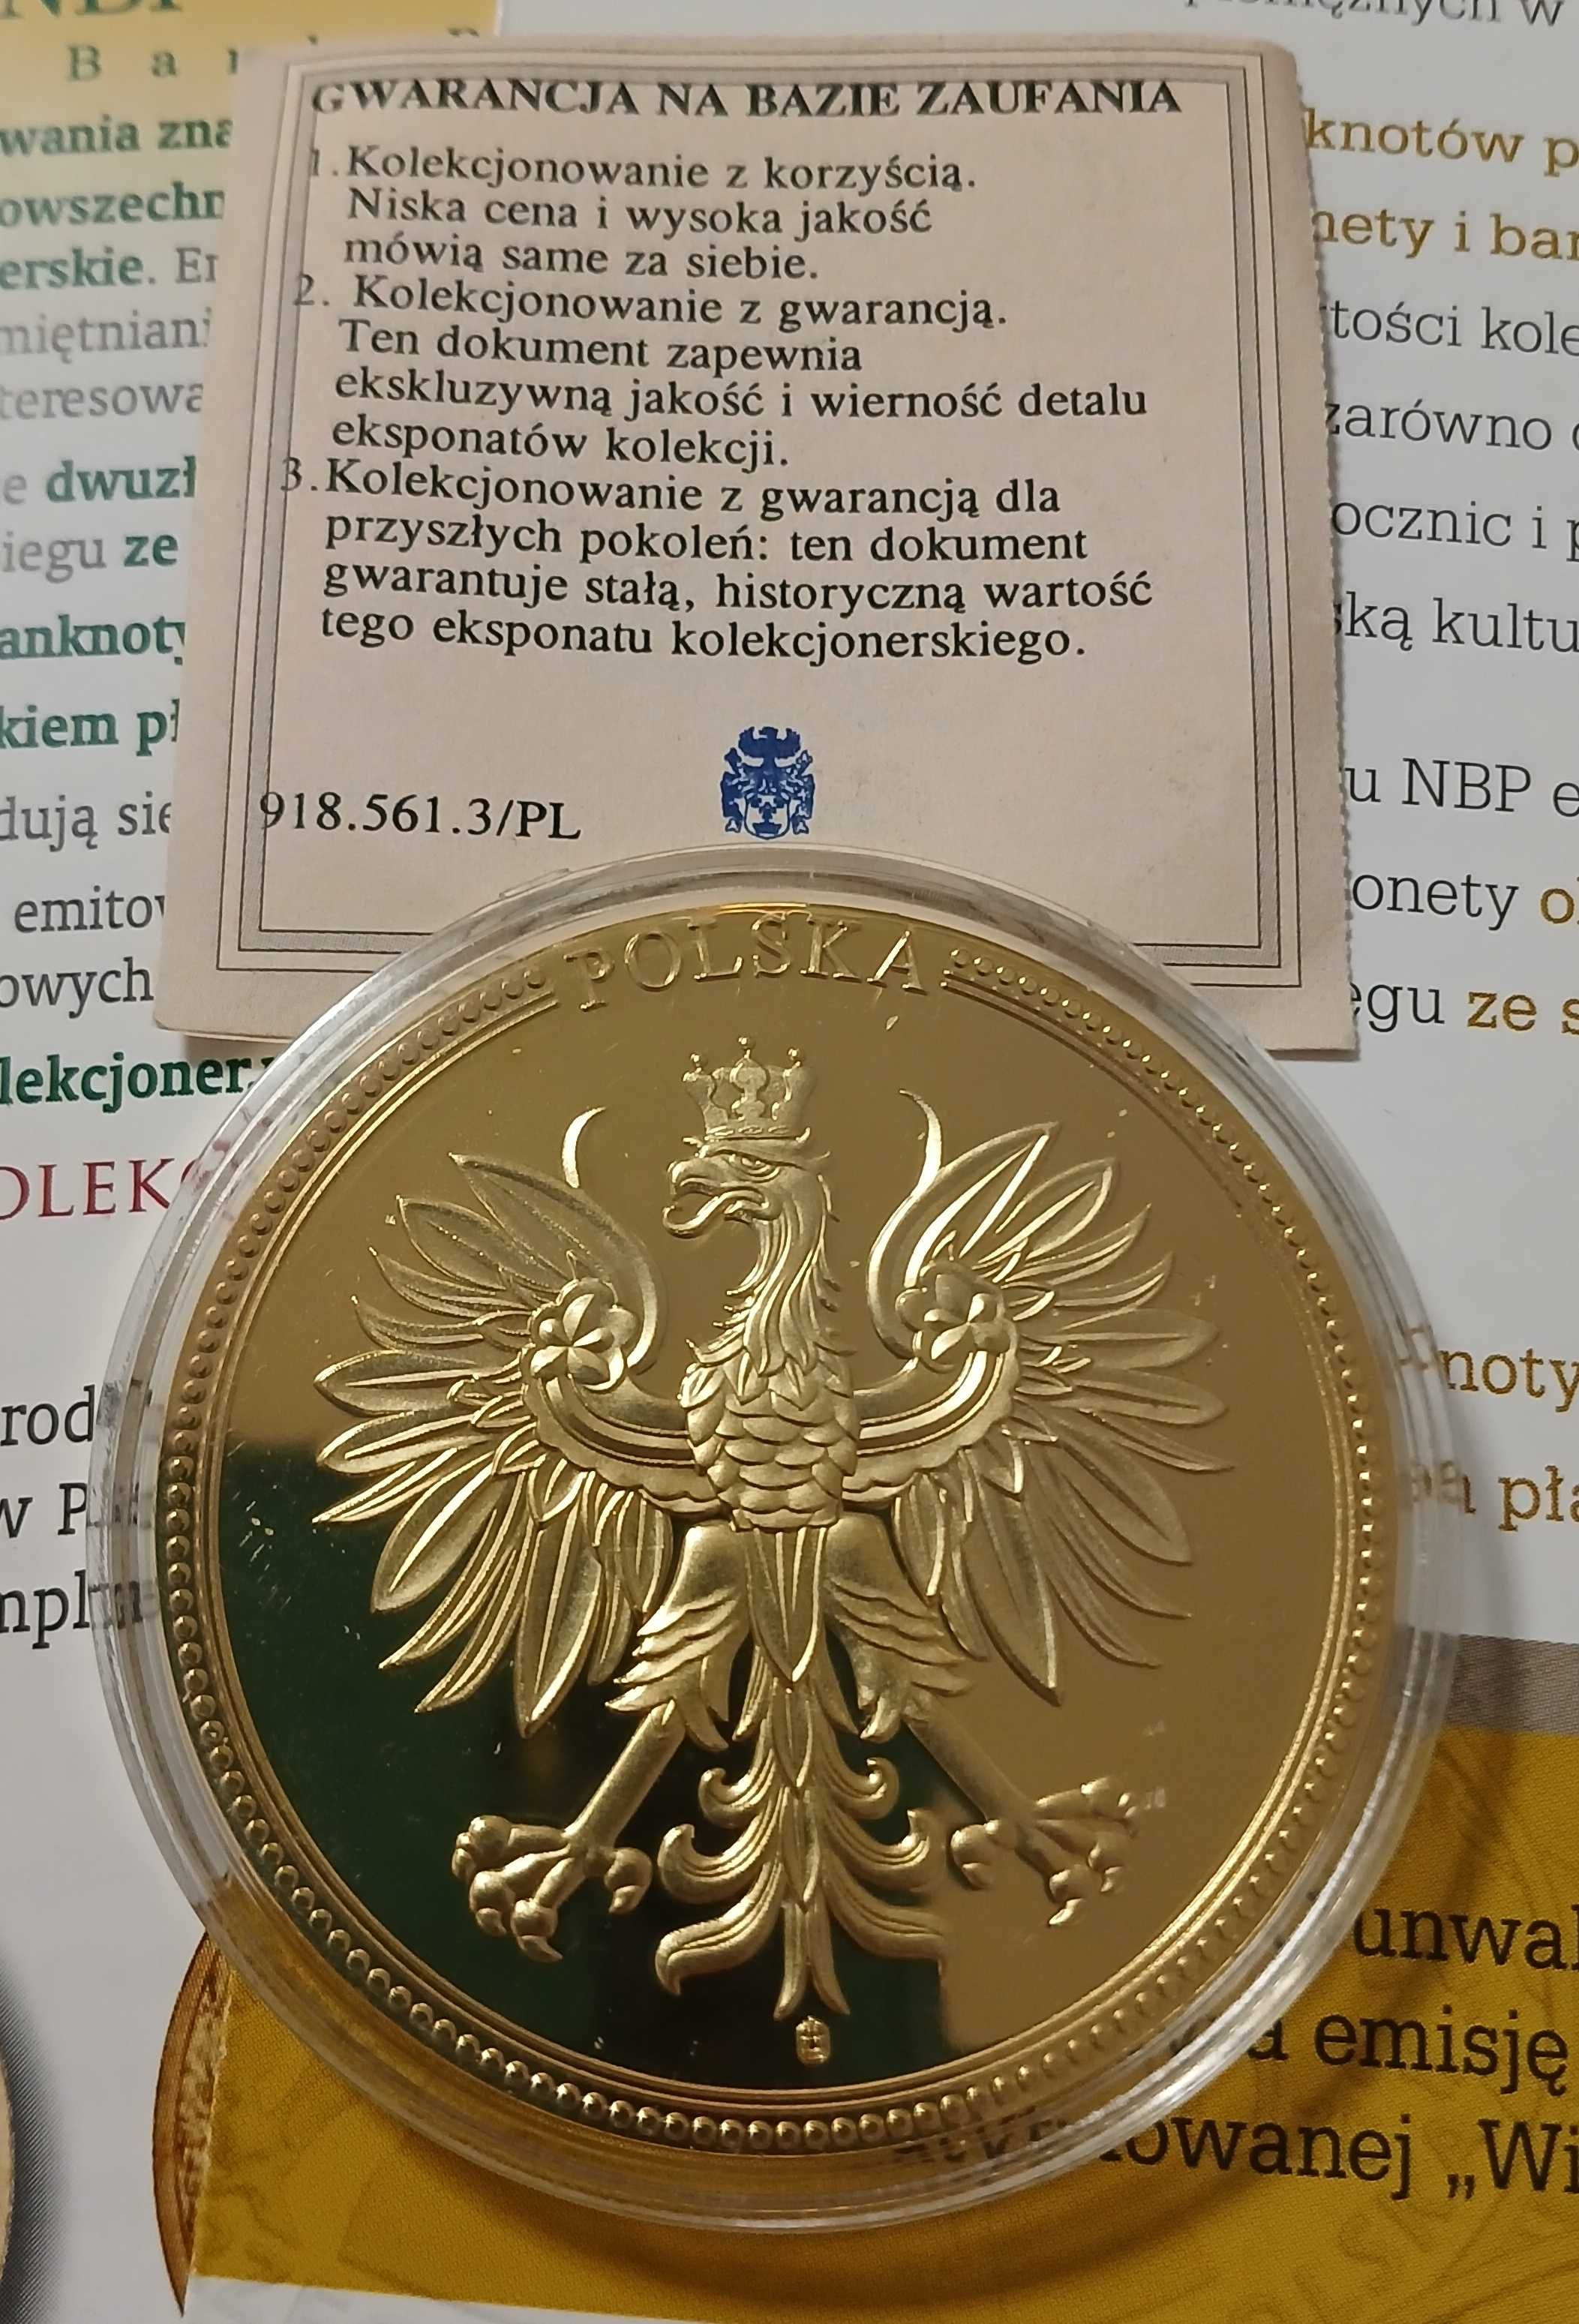 Medal kolekcjonerski z wizerunkiem banknotu 50 zł